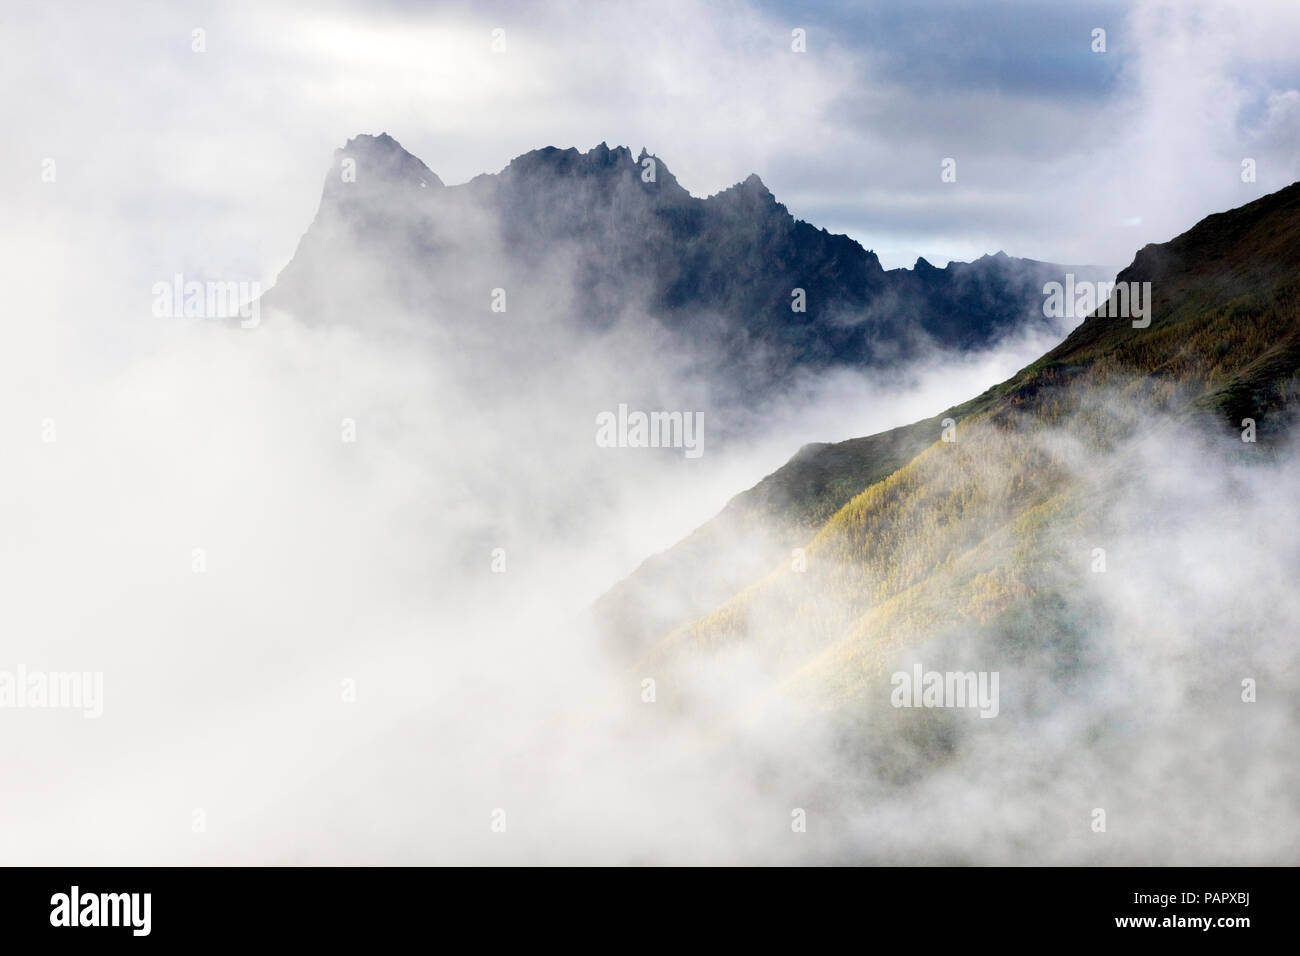 USA, Alaska, Wrangell-St. Elias National Park, mountains in fog Stock Photo